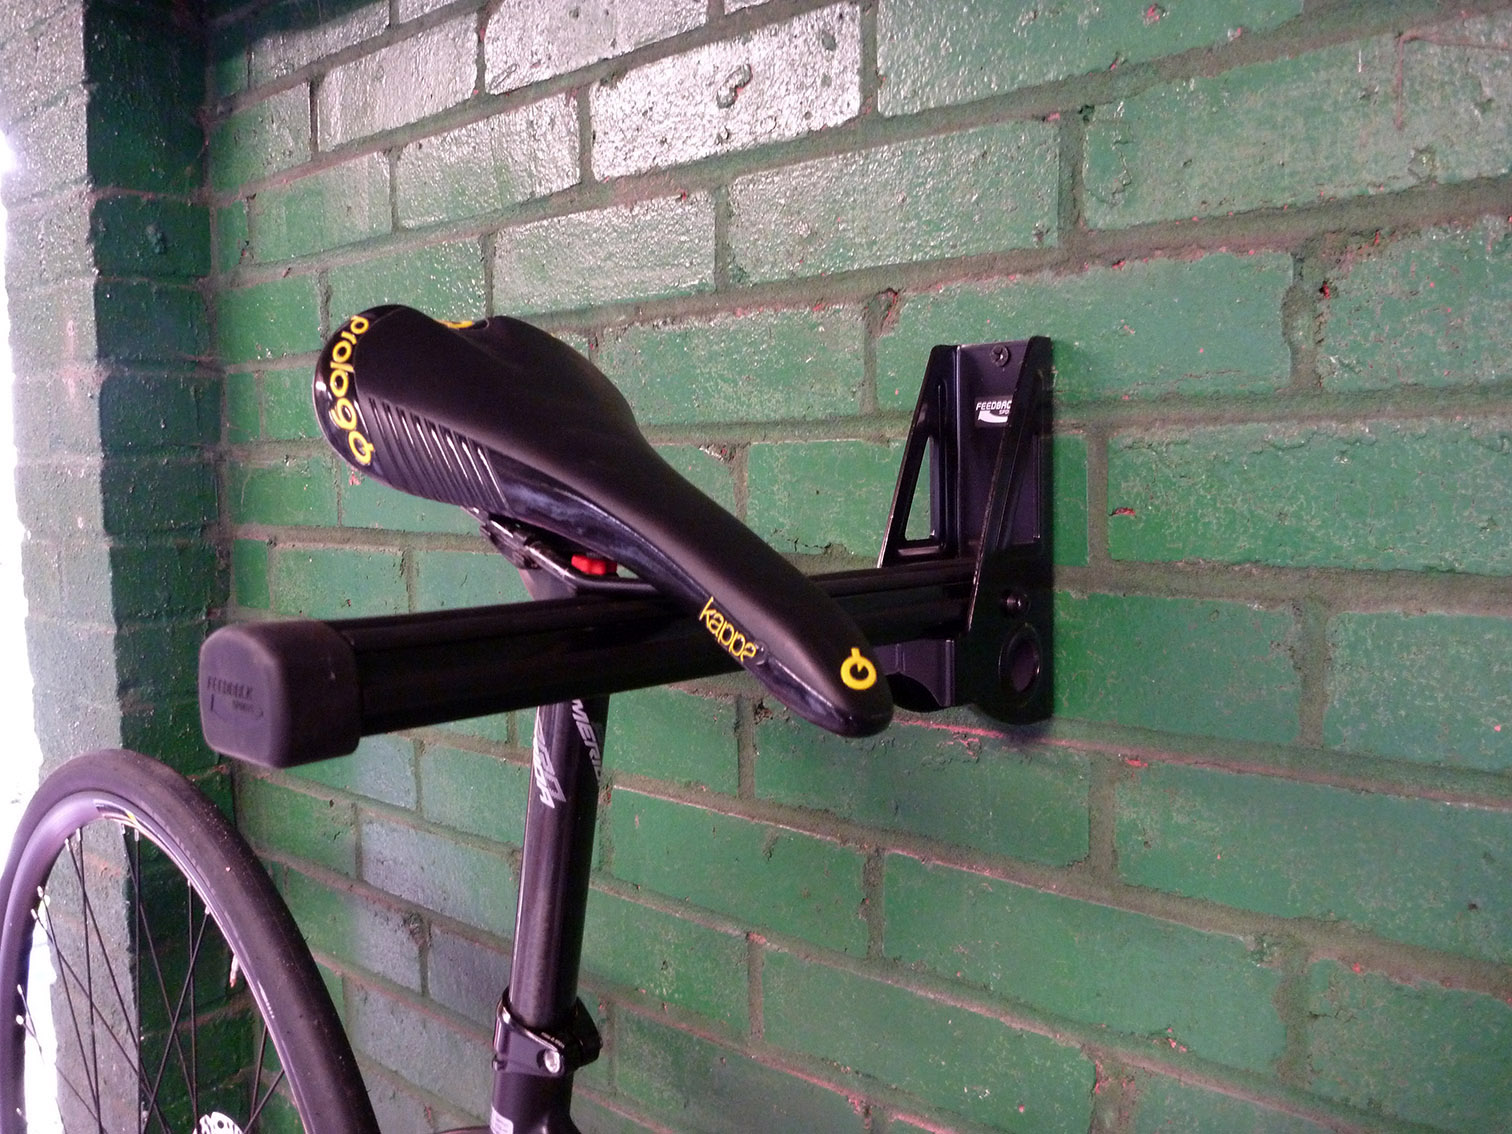 feedback sports velo wall post bike rack